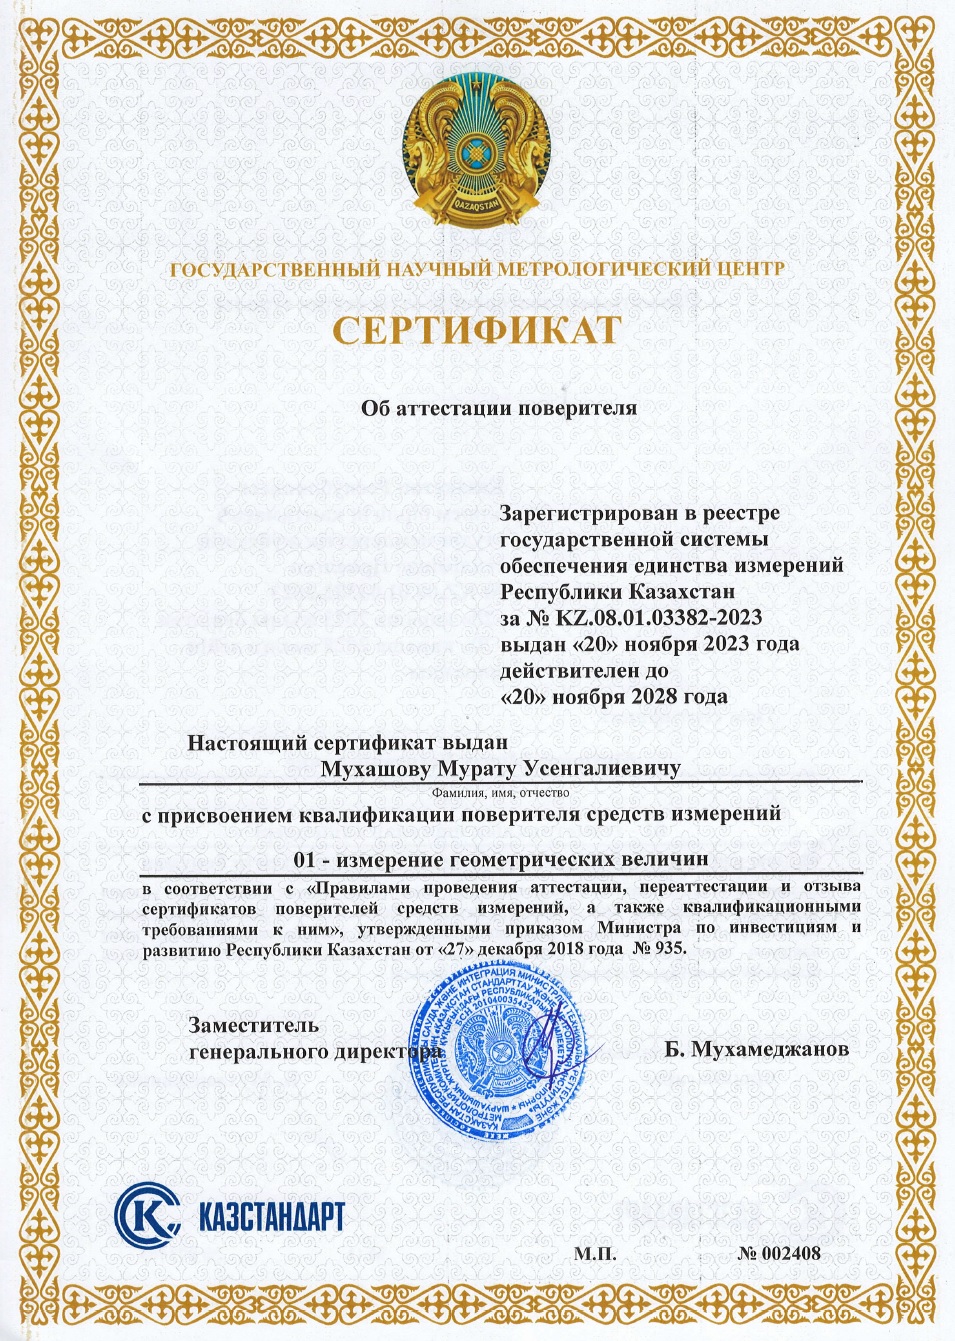 Сертификат поверителя измерении геометрических величин. №002408. Мухашов М.У.